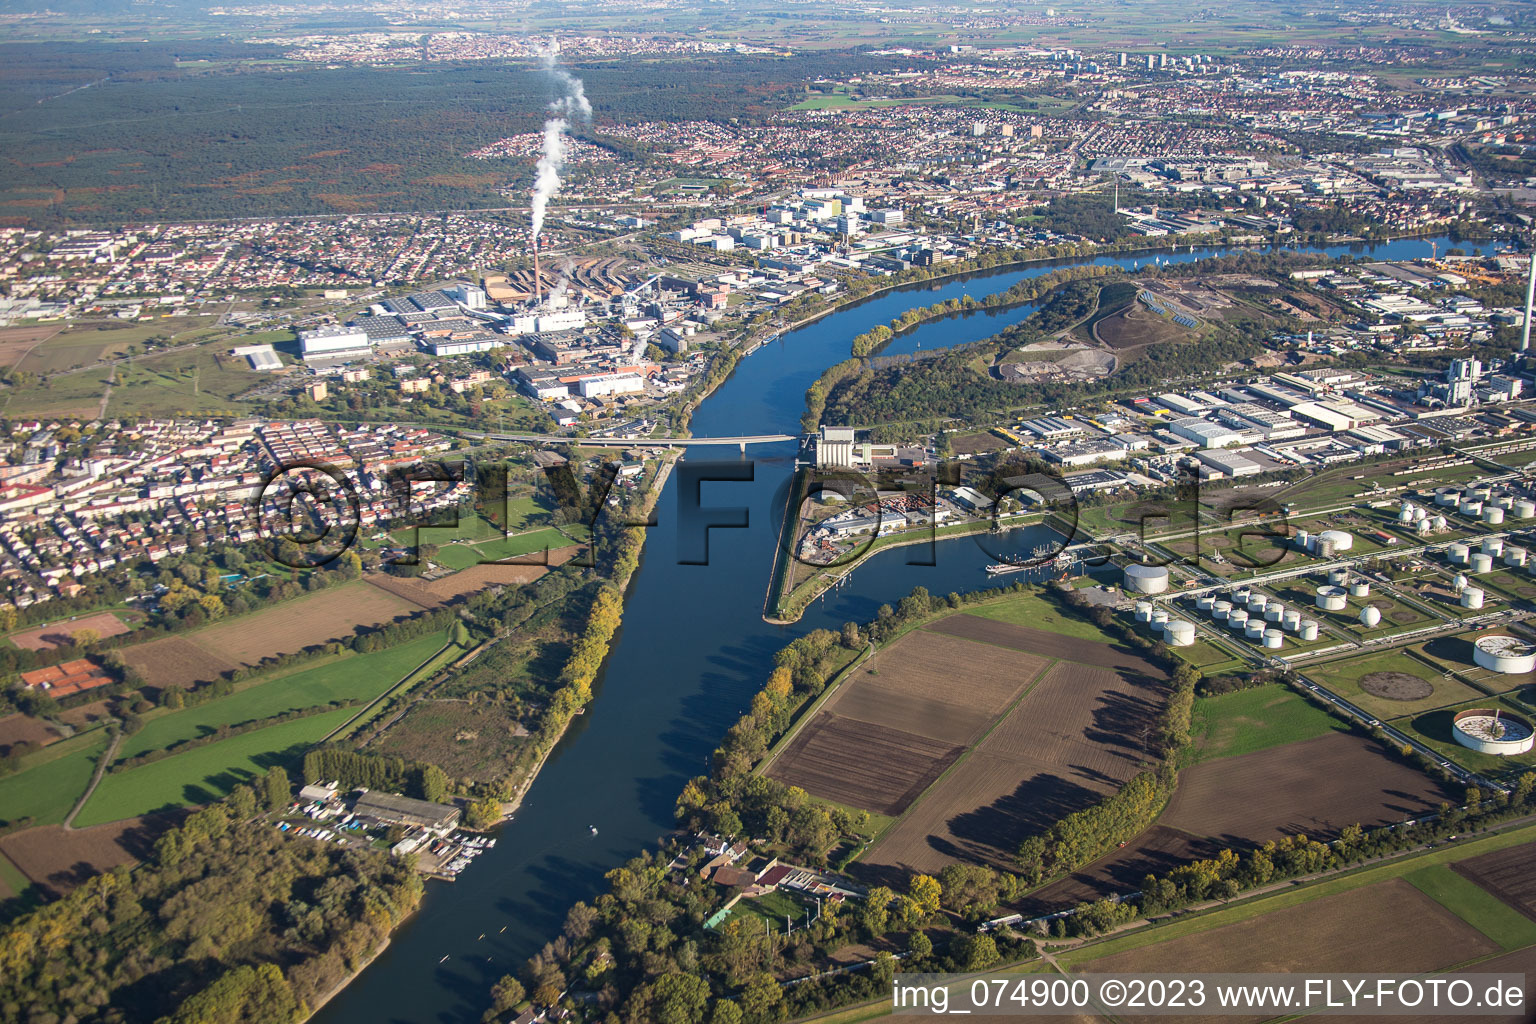 Aerial view of Bonadieshafen, Friesenheim Island in the district Neckarstadt-West in Mannheim in the state Baden-Wuerttemberg, Germany